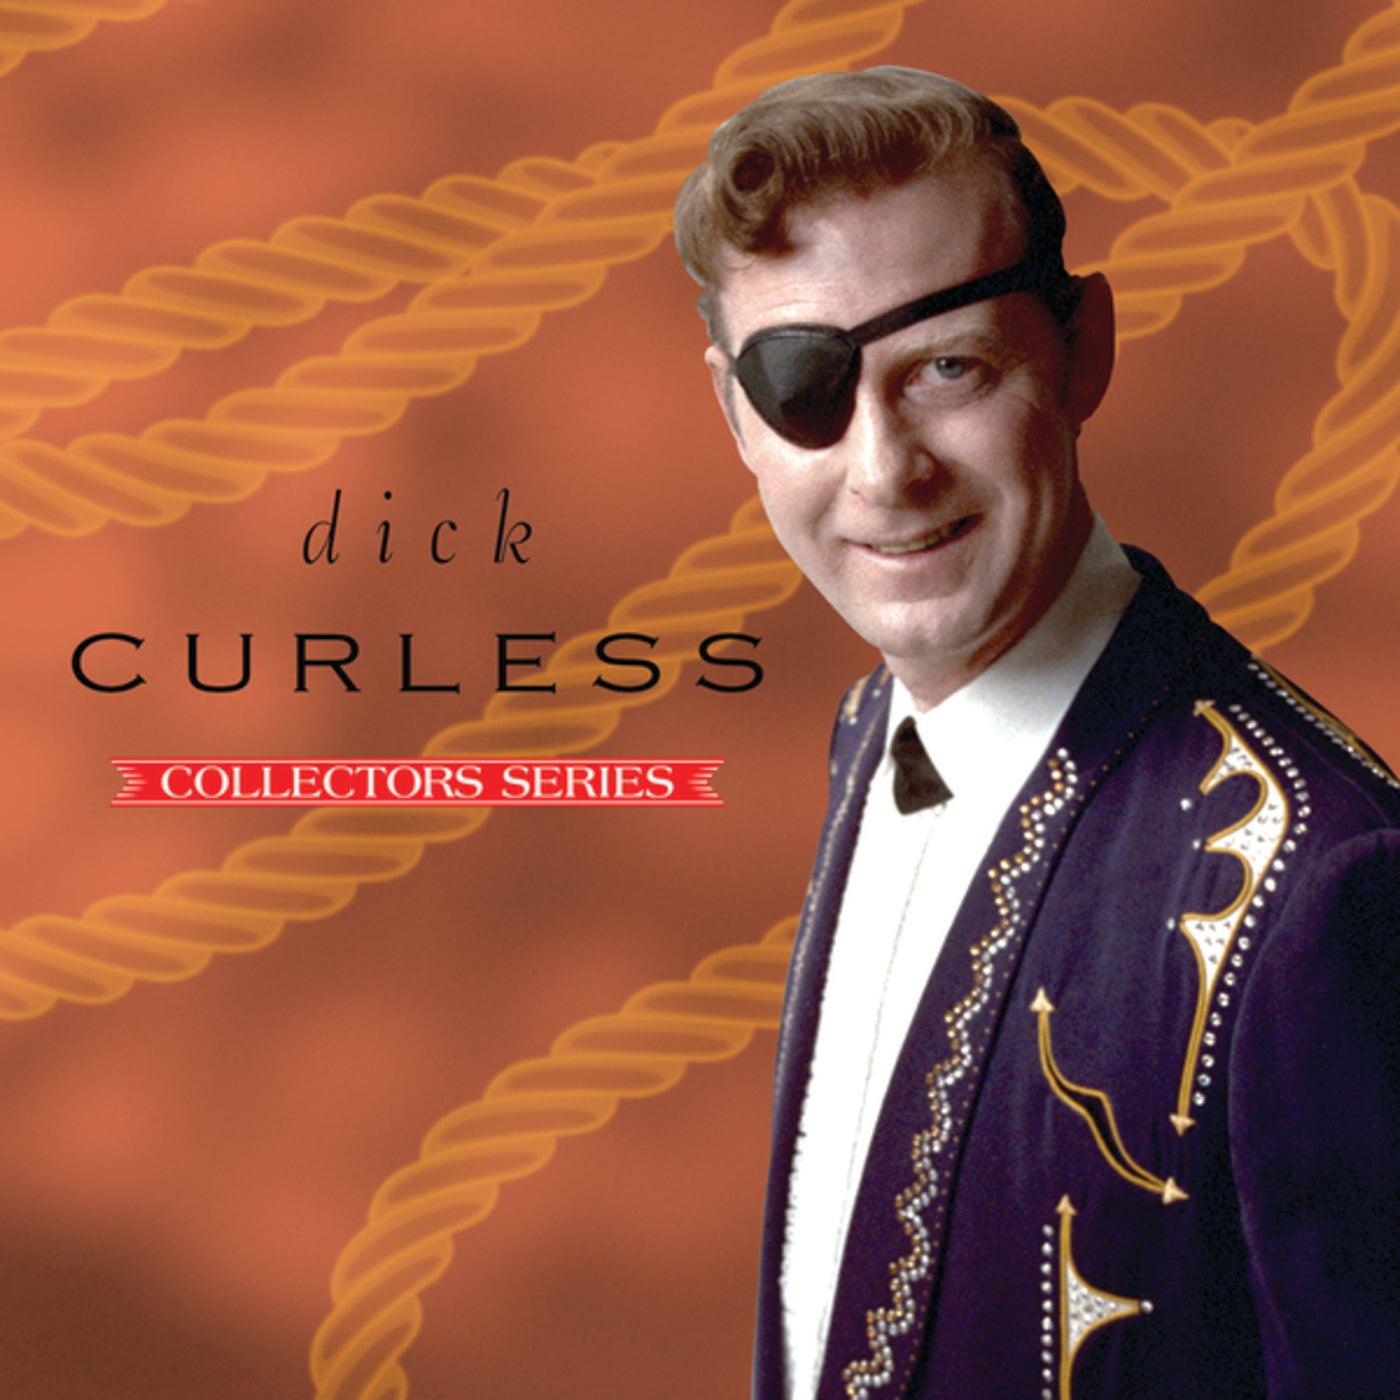 Dick song. Big dick исполнитель. Dick Curless Singer.